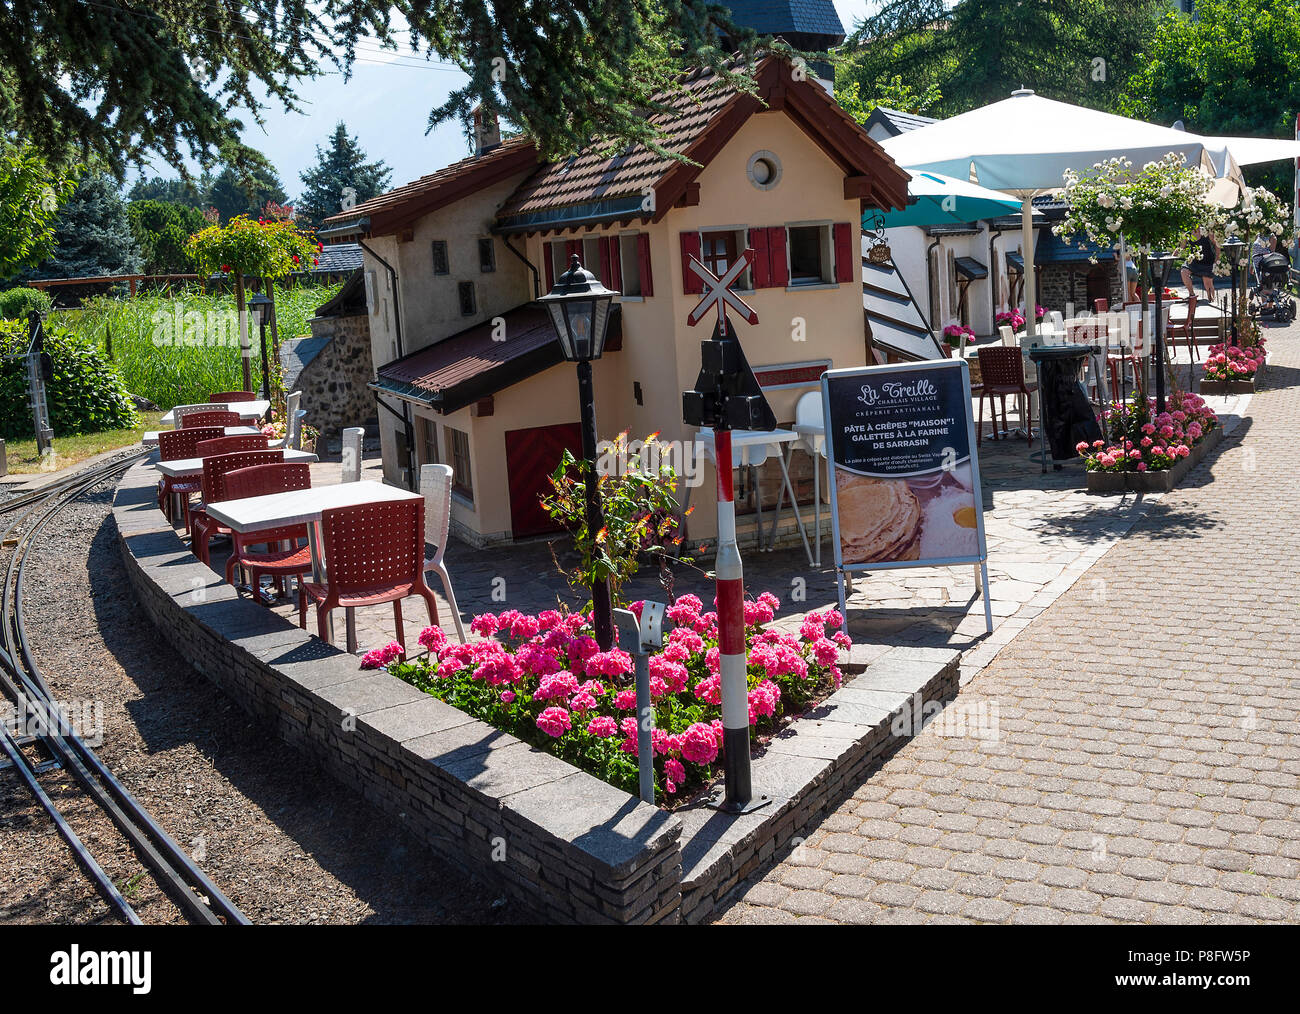 La Creille Creperie au village de Chablais au chemin de fer miniature suisse Vapeur Parc, près du lac Léman le Bouveret Suisse Banque D'Images